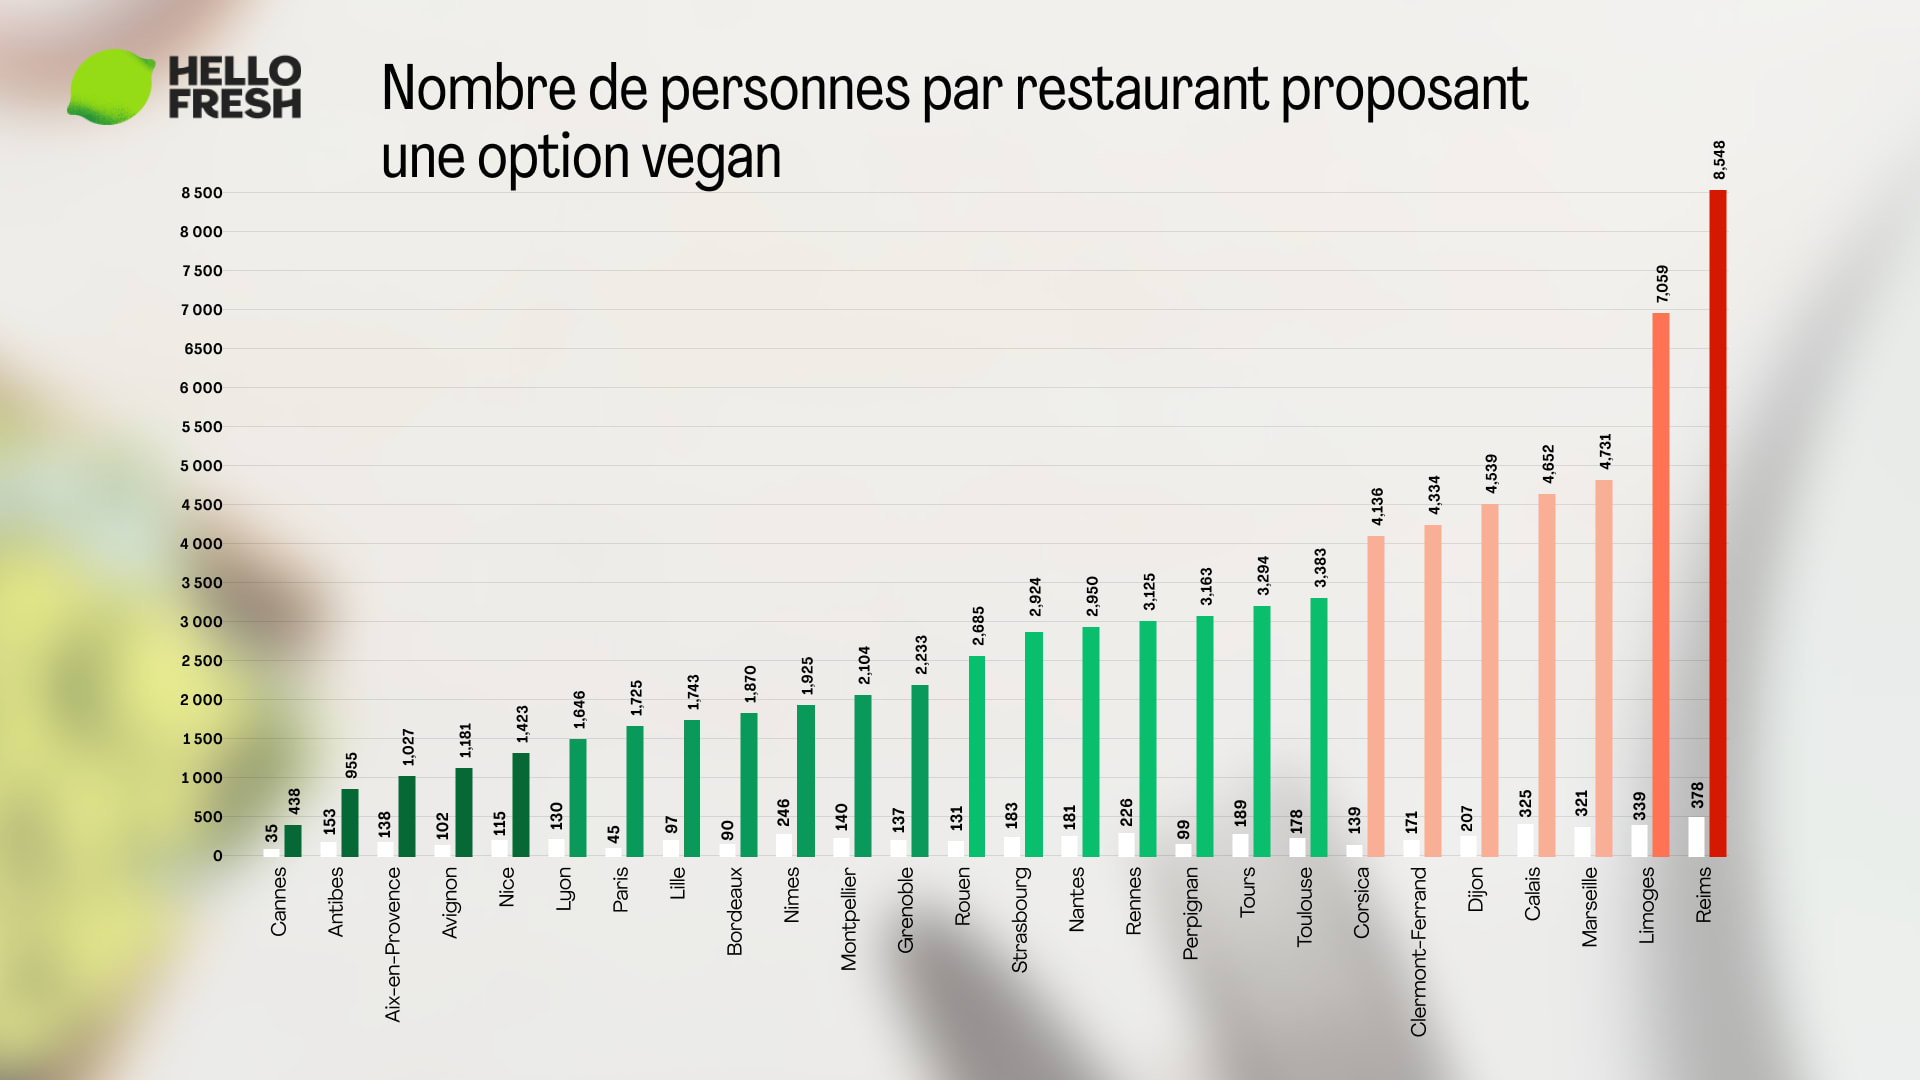 Qu’en est-il de la disponibilité des restaurants adaptés aux végans dans les villes françaises, par rapport à la population ?